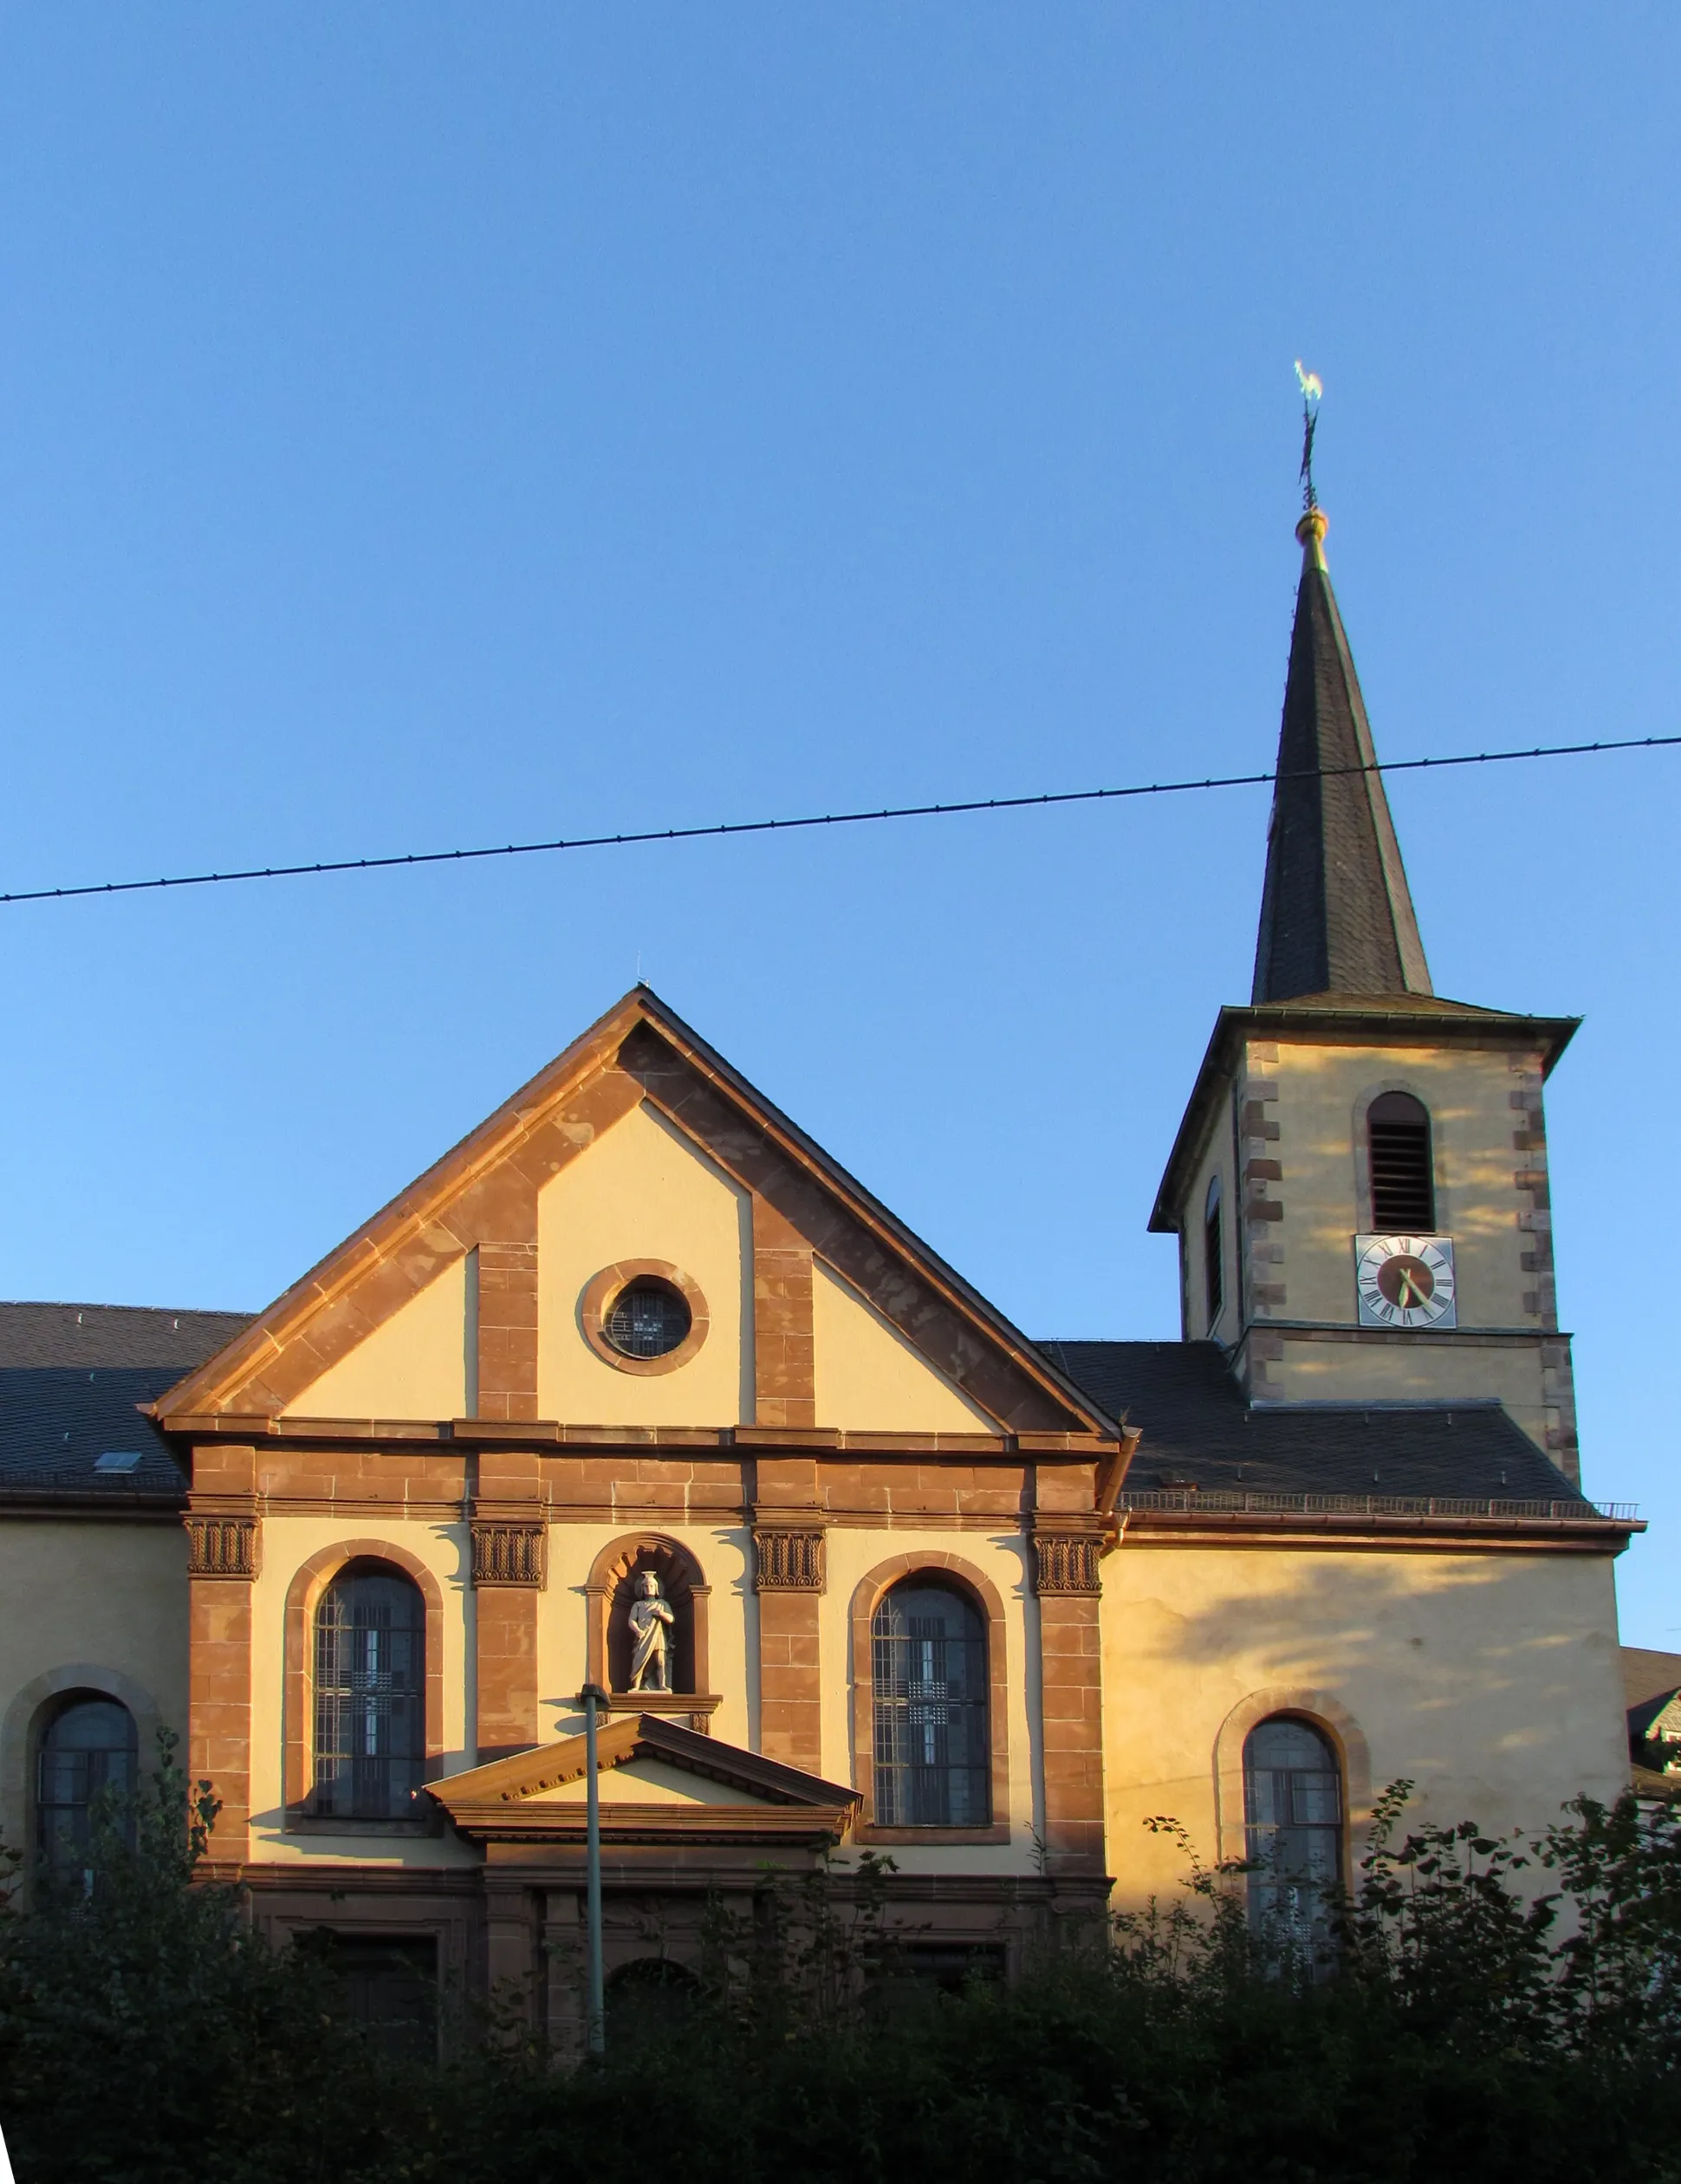 Photo showing: Bildinhalt: Katholische Pfarrkirche St. Sebastian in Eppelborn
Aufnahmeort: Eppelborn, Deutschland